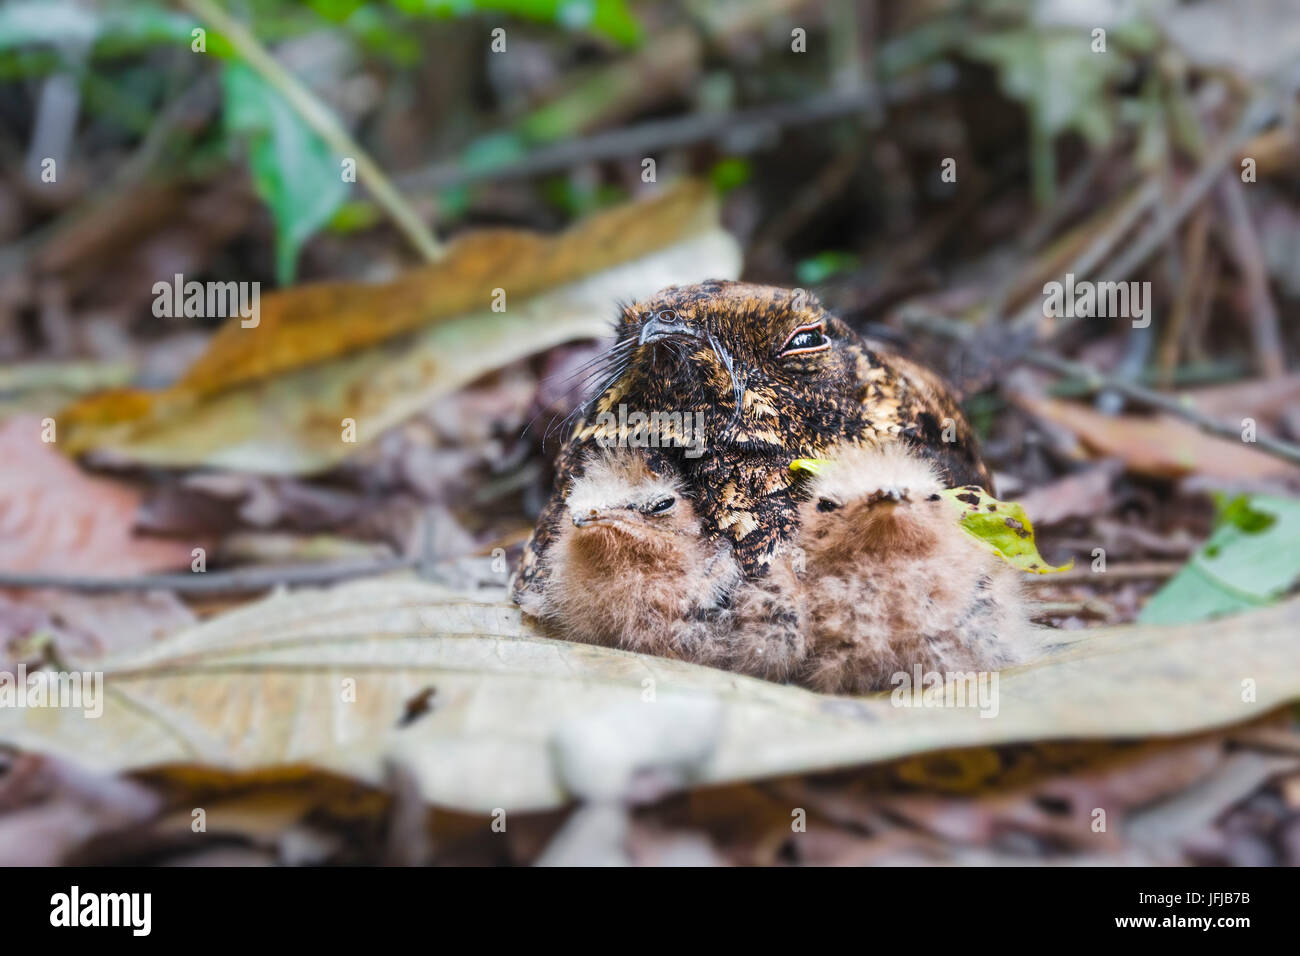 Pauraque común, tierra ave de bosque primario en río Tapajos protegiendo a sus pollitos recién nacidos camuflaje en el suelo, Pará, Santarém, Brasil, América del Sur Foto de stock